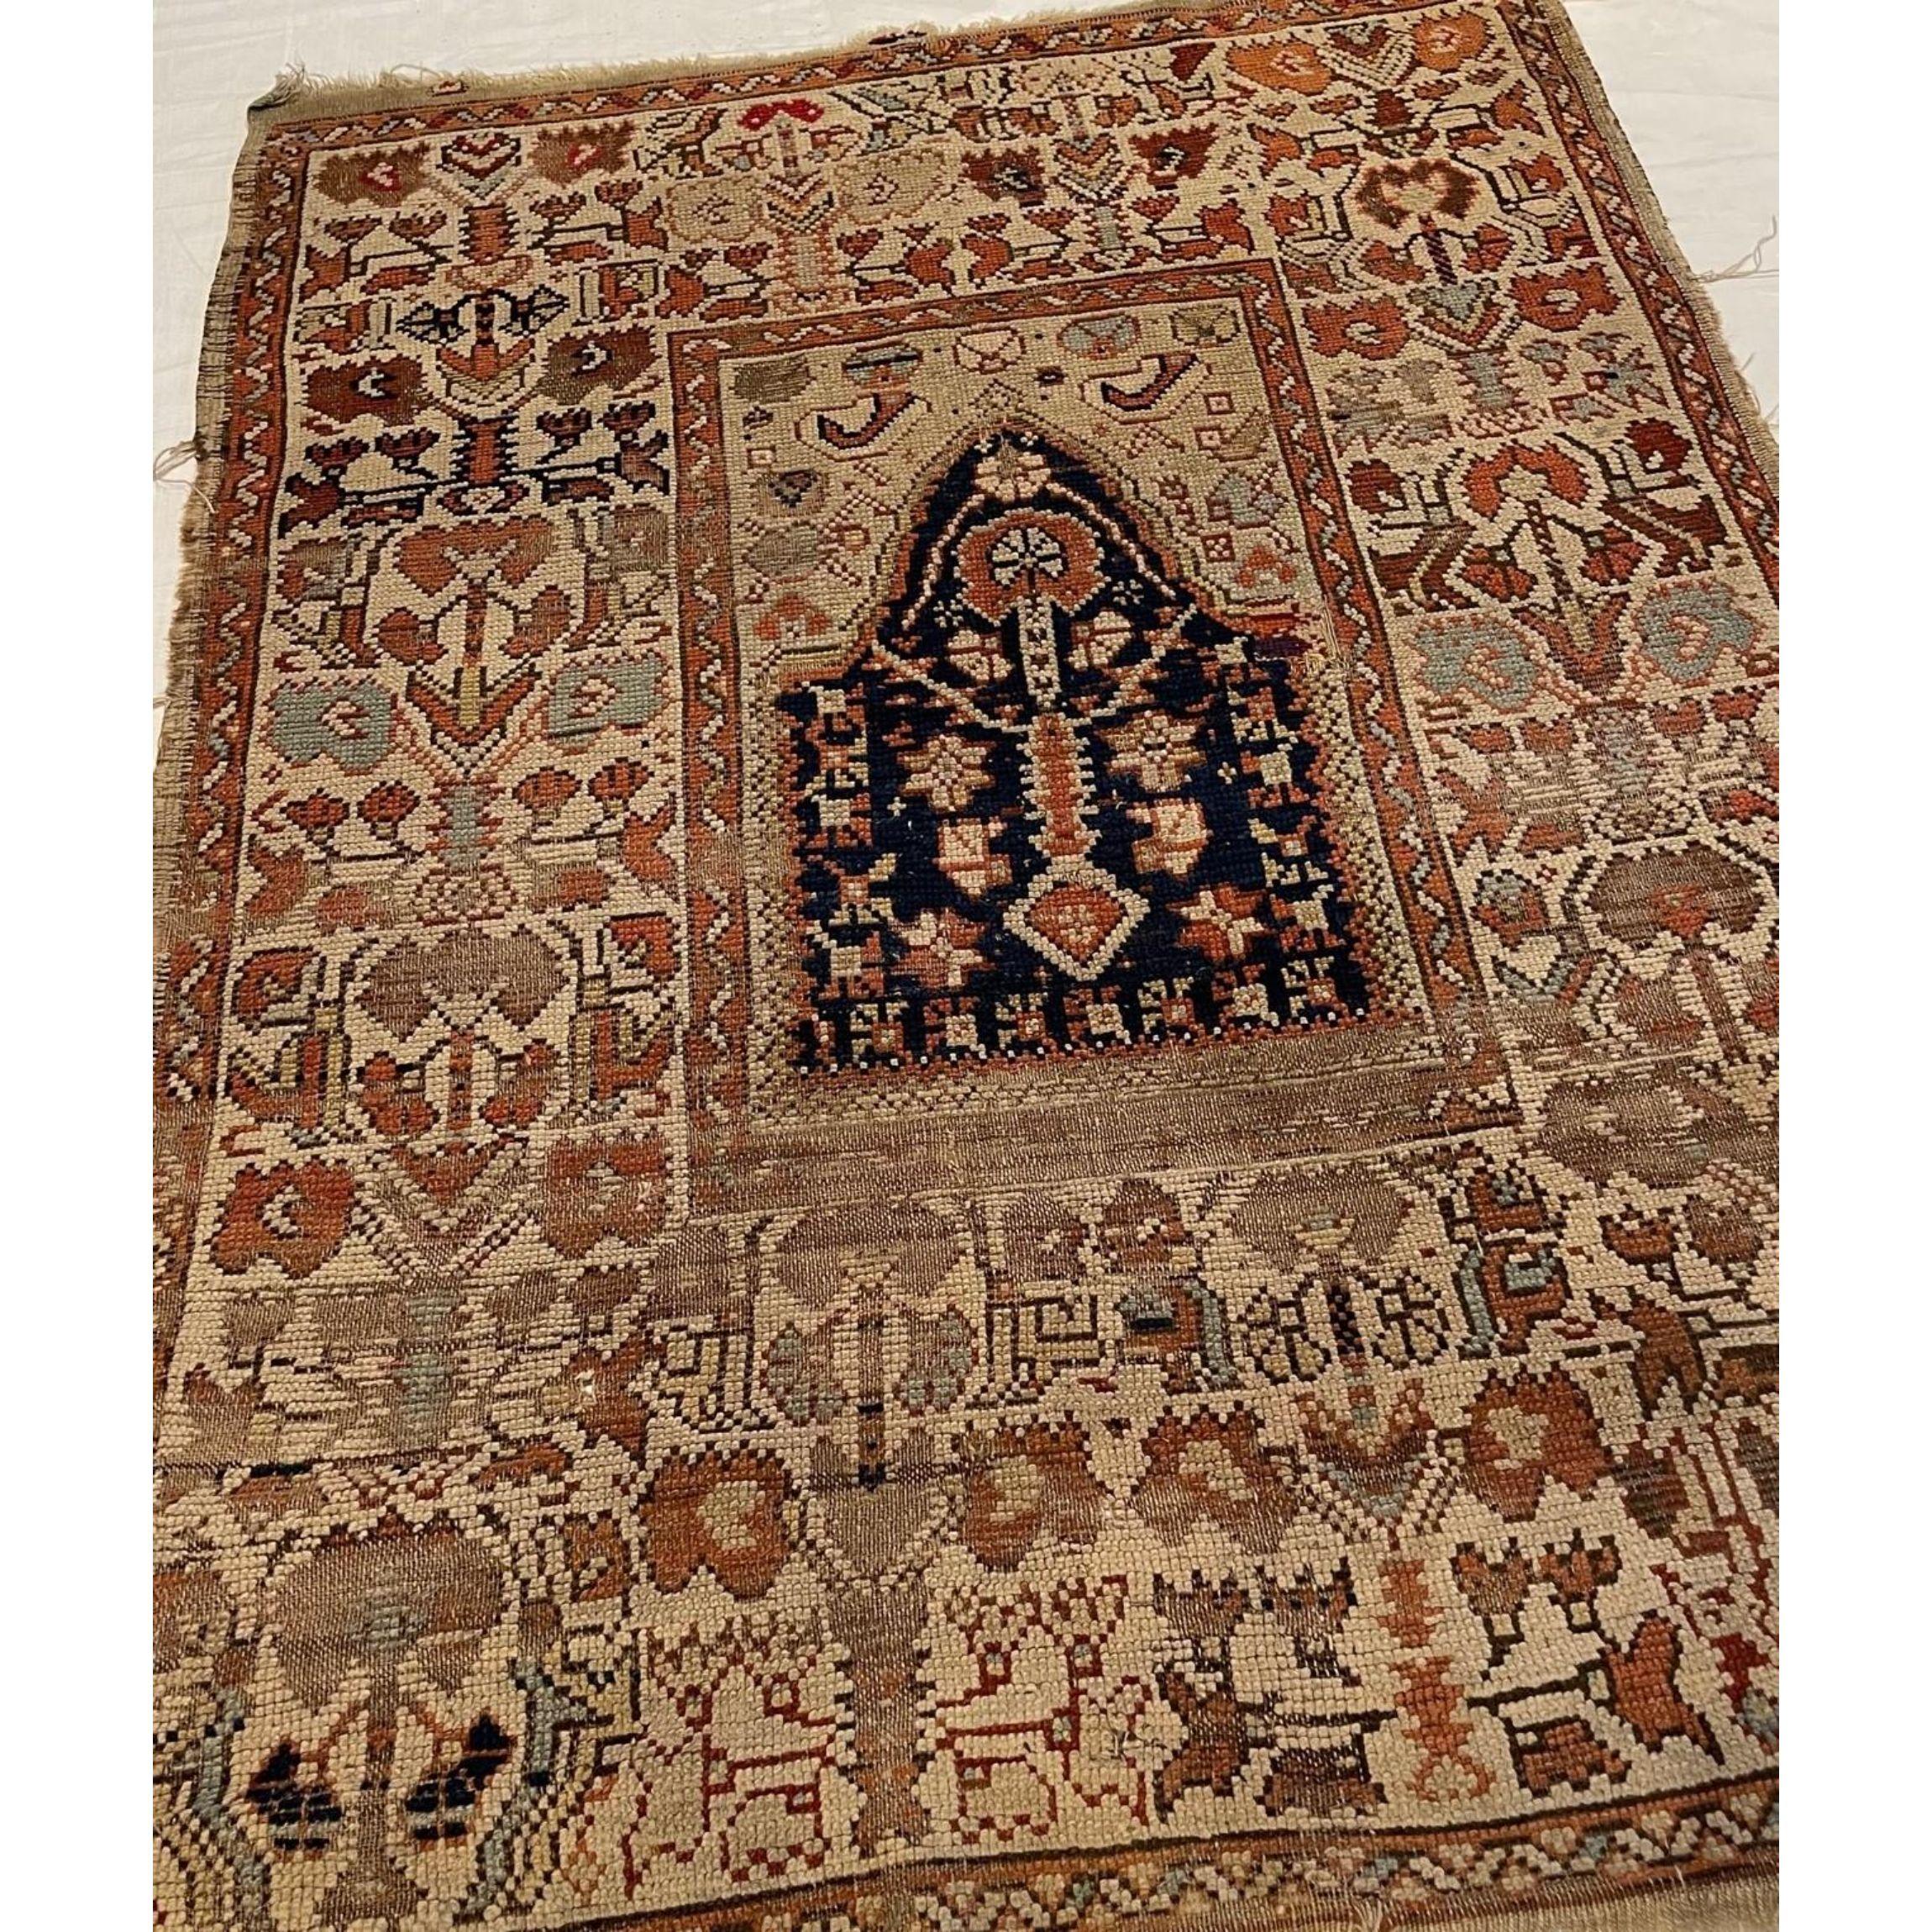 Ancien tapis de prière turc 4.6X3.3, fait et noué à la main, pièces tribales et uniques,
tapis en laine, authentique carpe turc